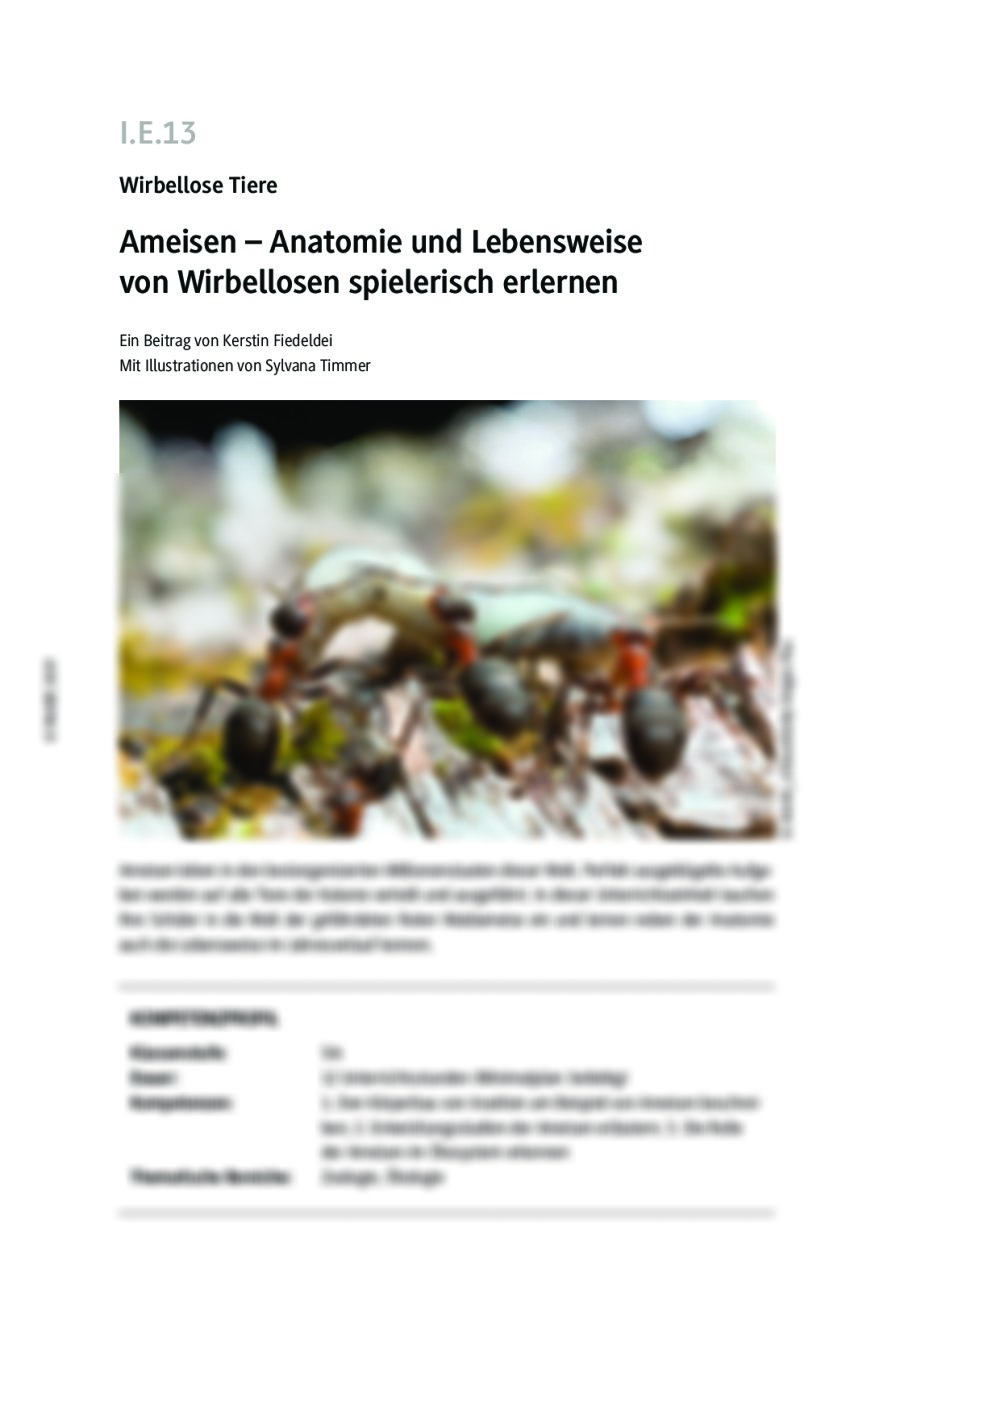 Die Anatomie und Lebensweise der Ameisen - Seite 1